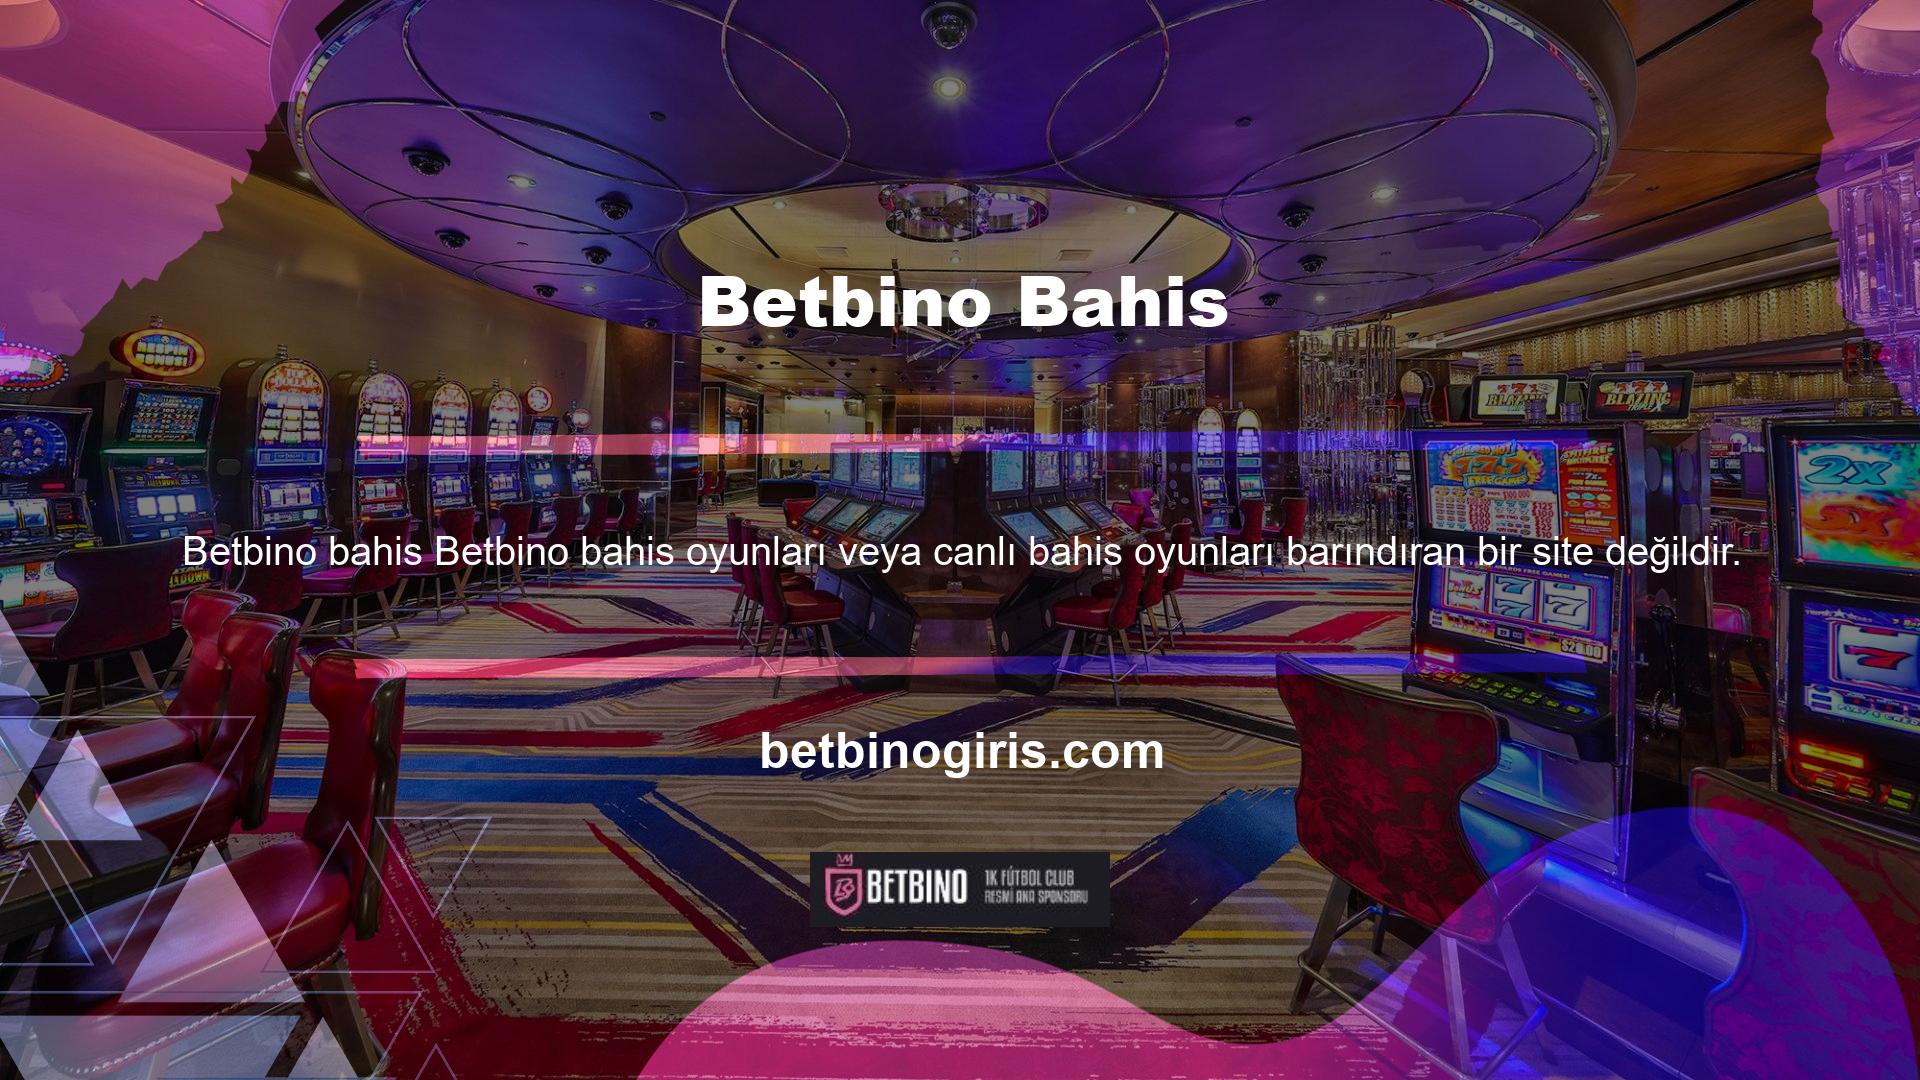 Ayrıca bu sitede çeşitli casino oyunları da yer almaktadır